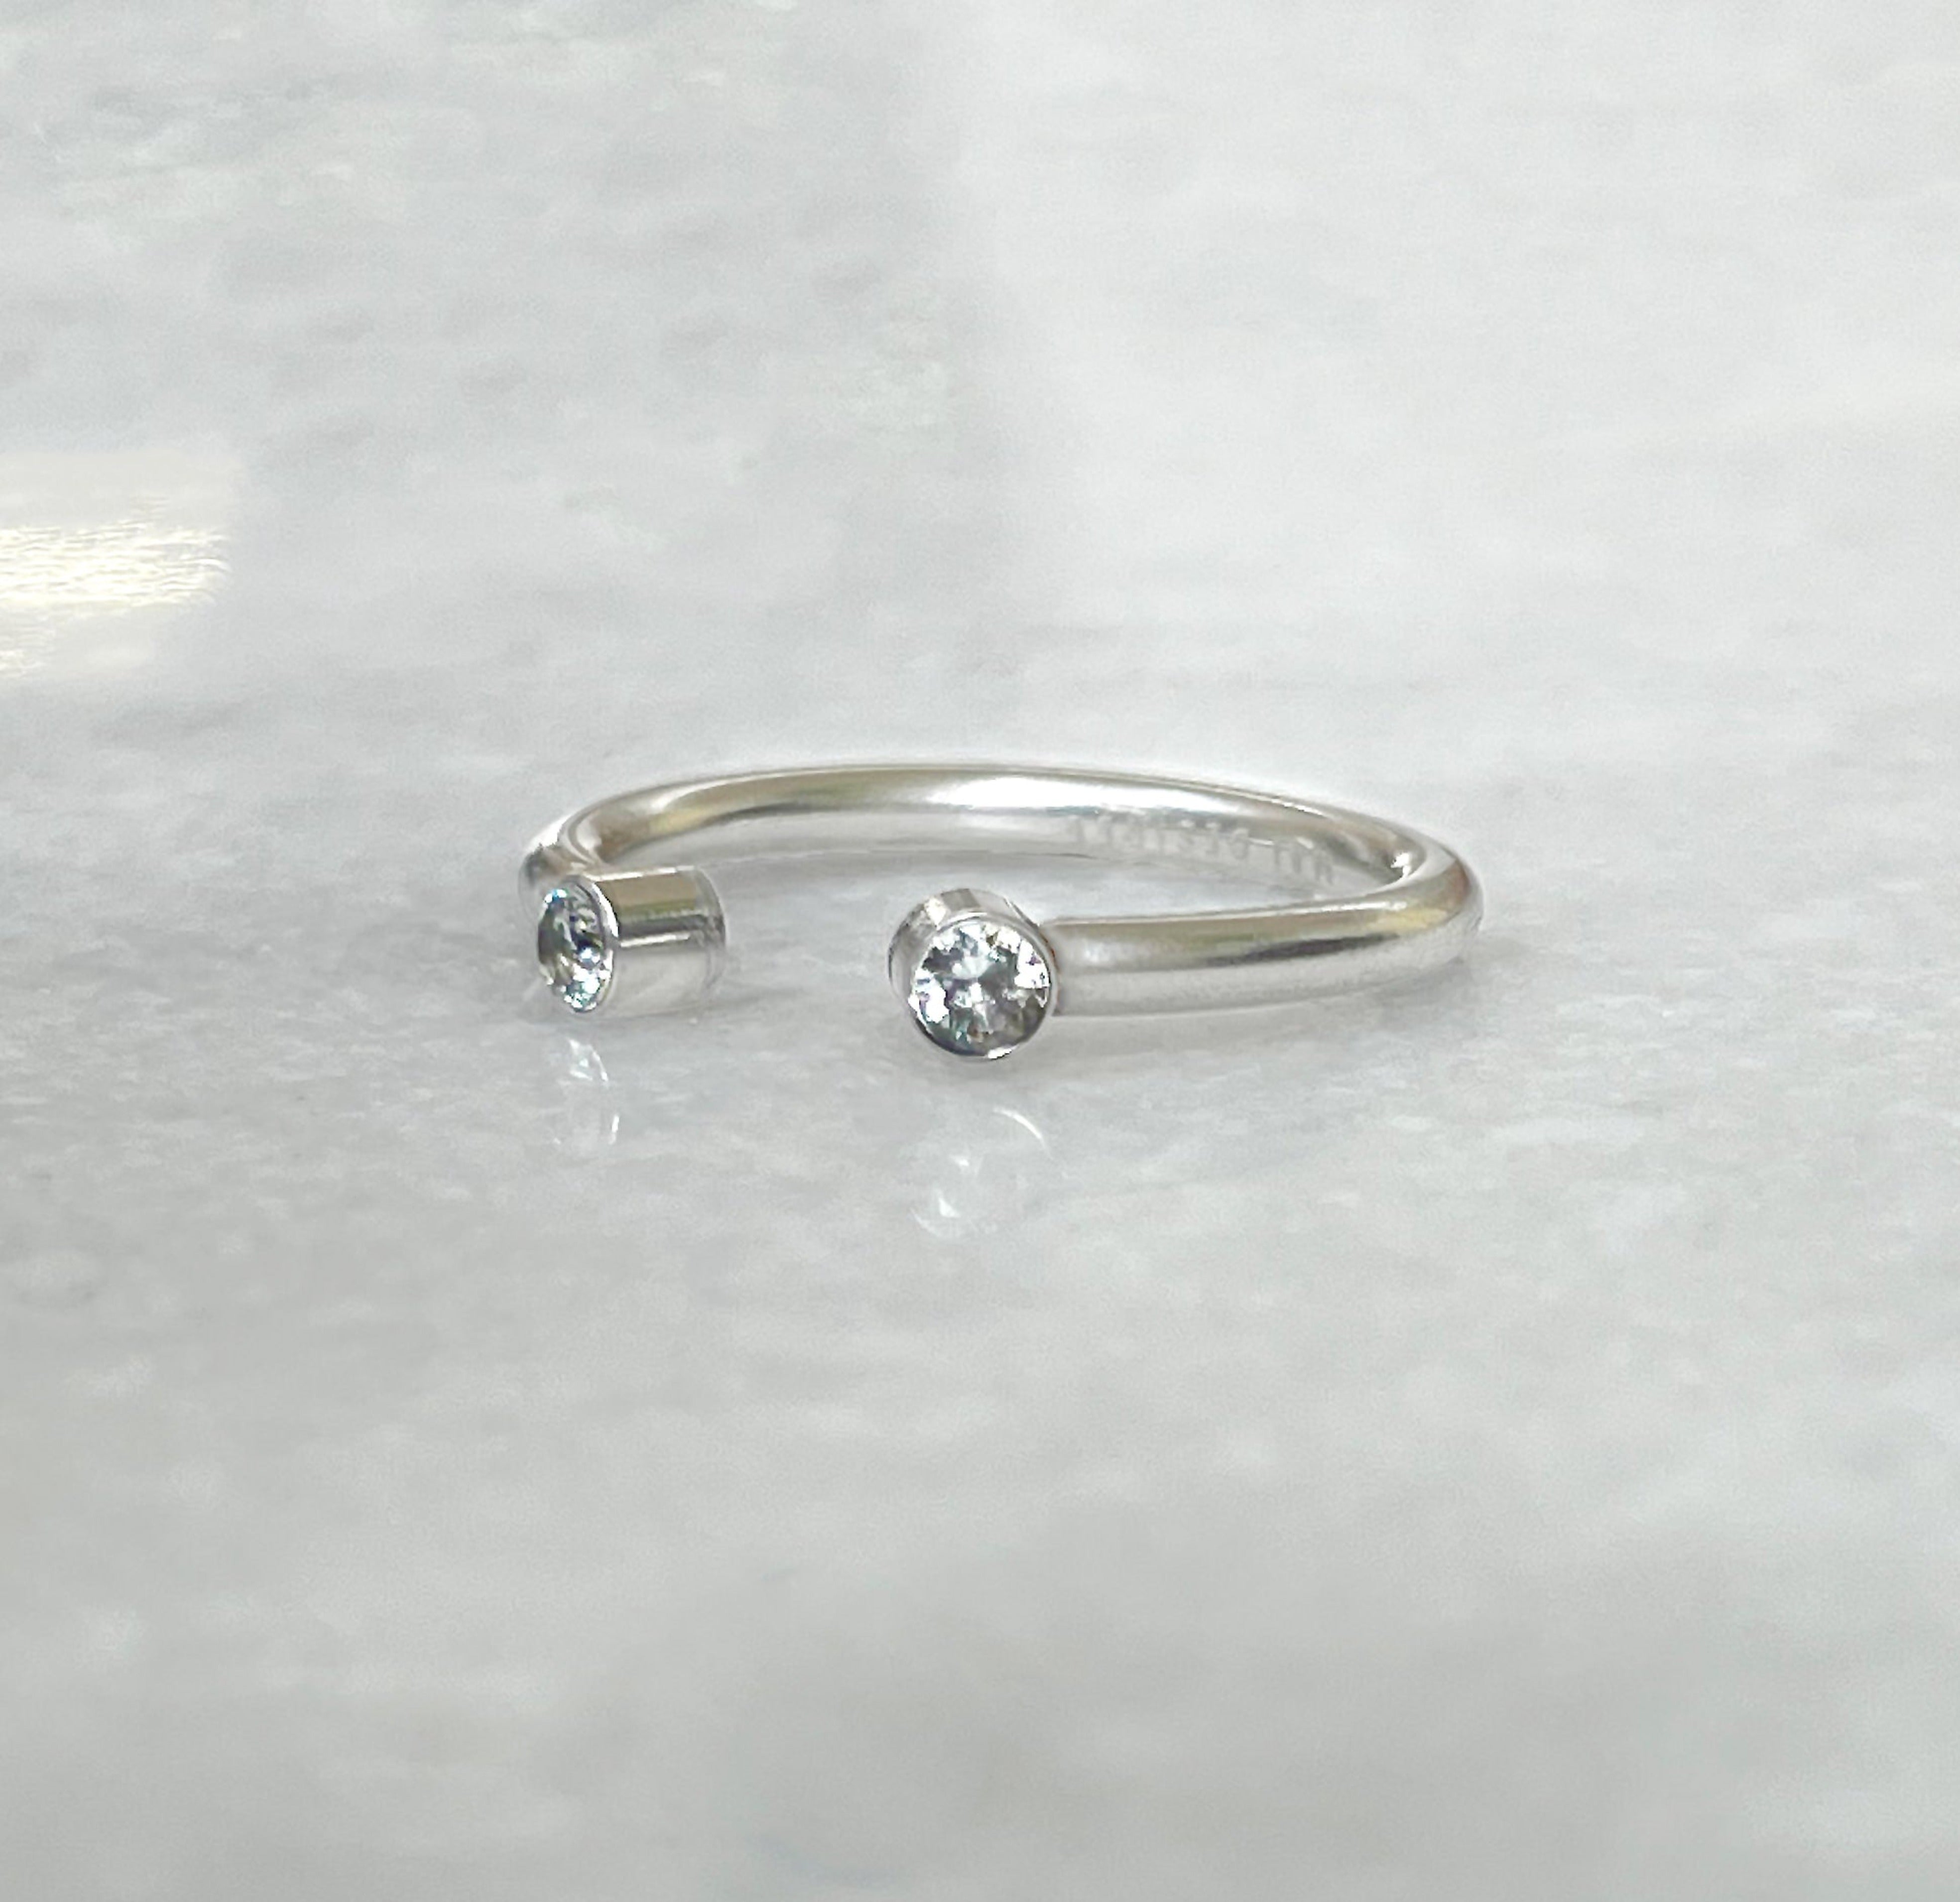 Jolie dainty silver open ring.  Waterproof jewelry